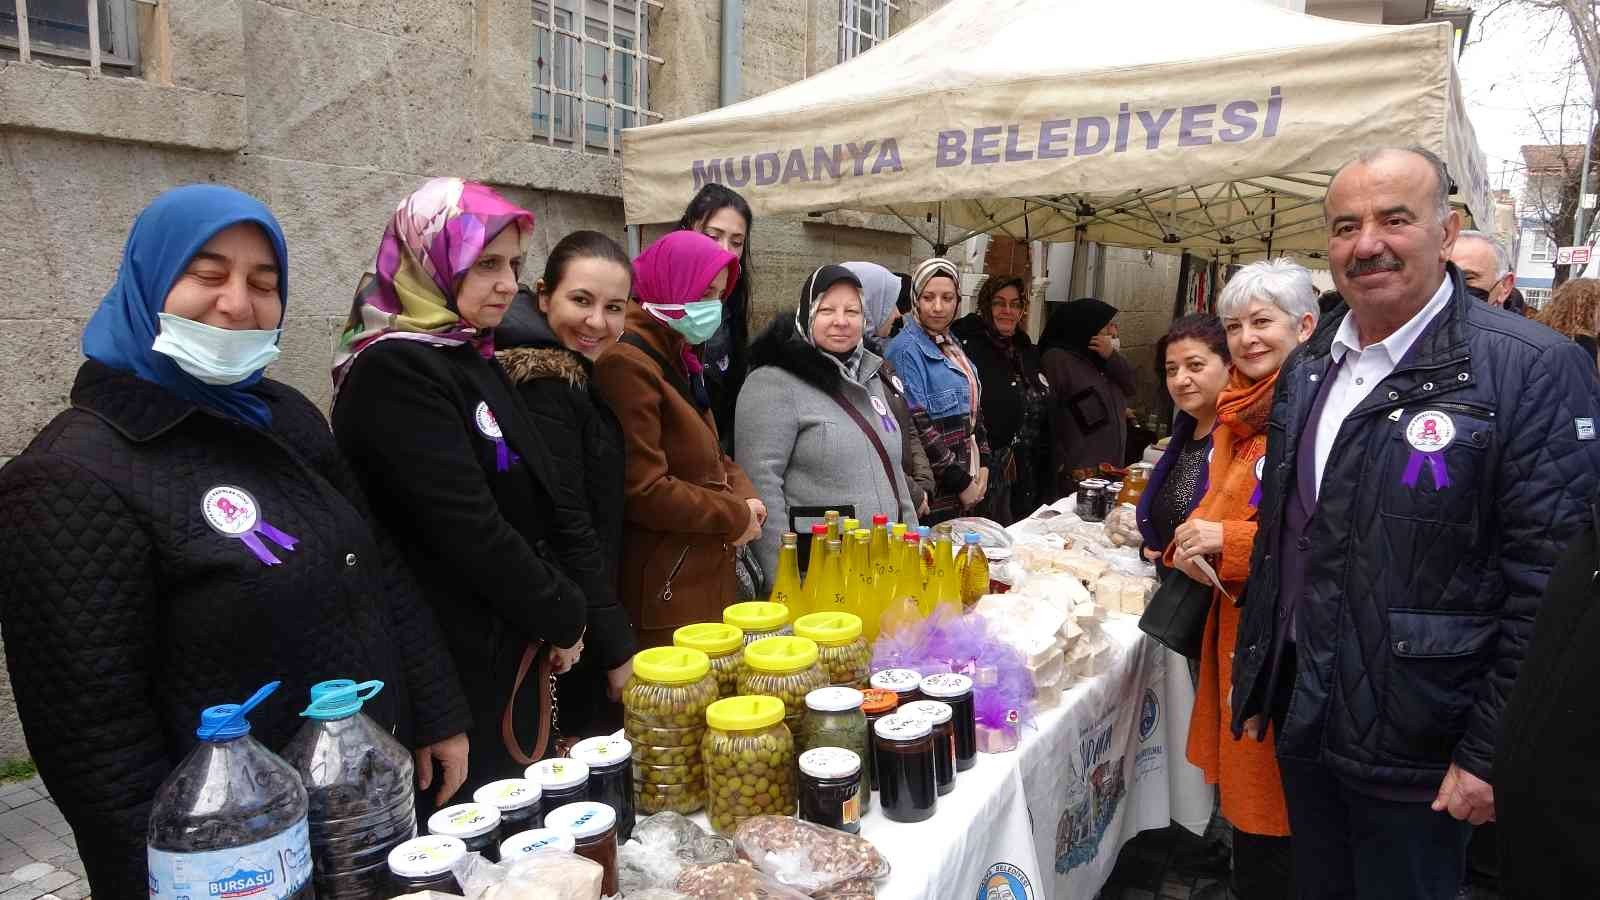 Mudanya Belediyesi, emekçi kadınları 3 gün anacak